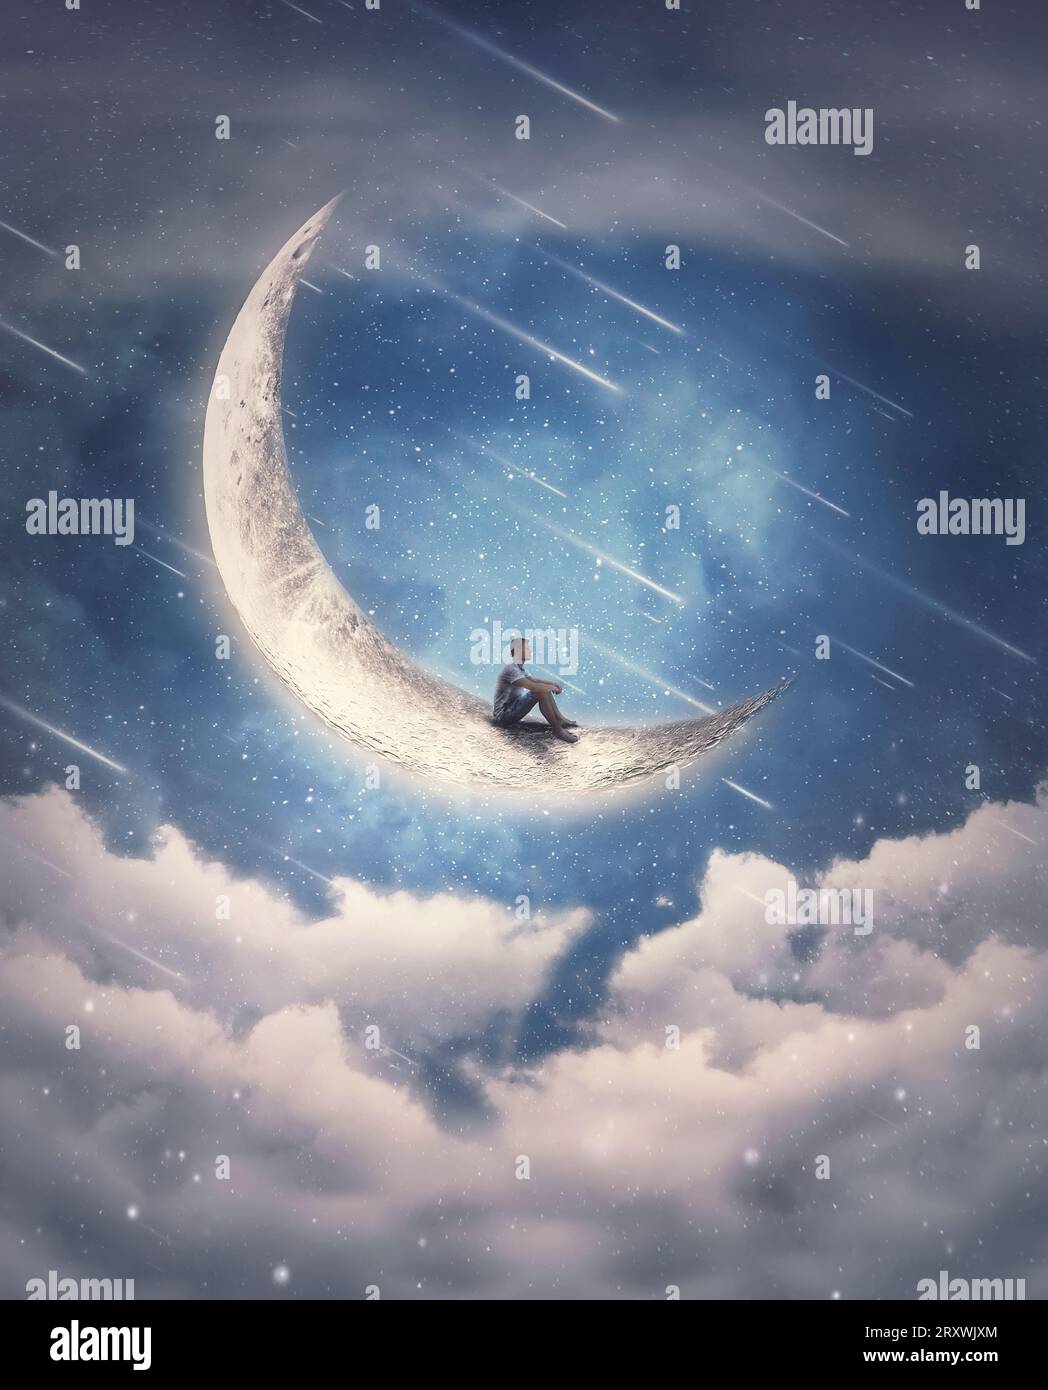 Scène de rêve avec un garçon assis sur le croissant de lune regardant les étoiles tombantes sur le ciel nocturne. Vue magique et surréaliste, concept d'aventure Banque D'Images